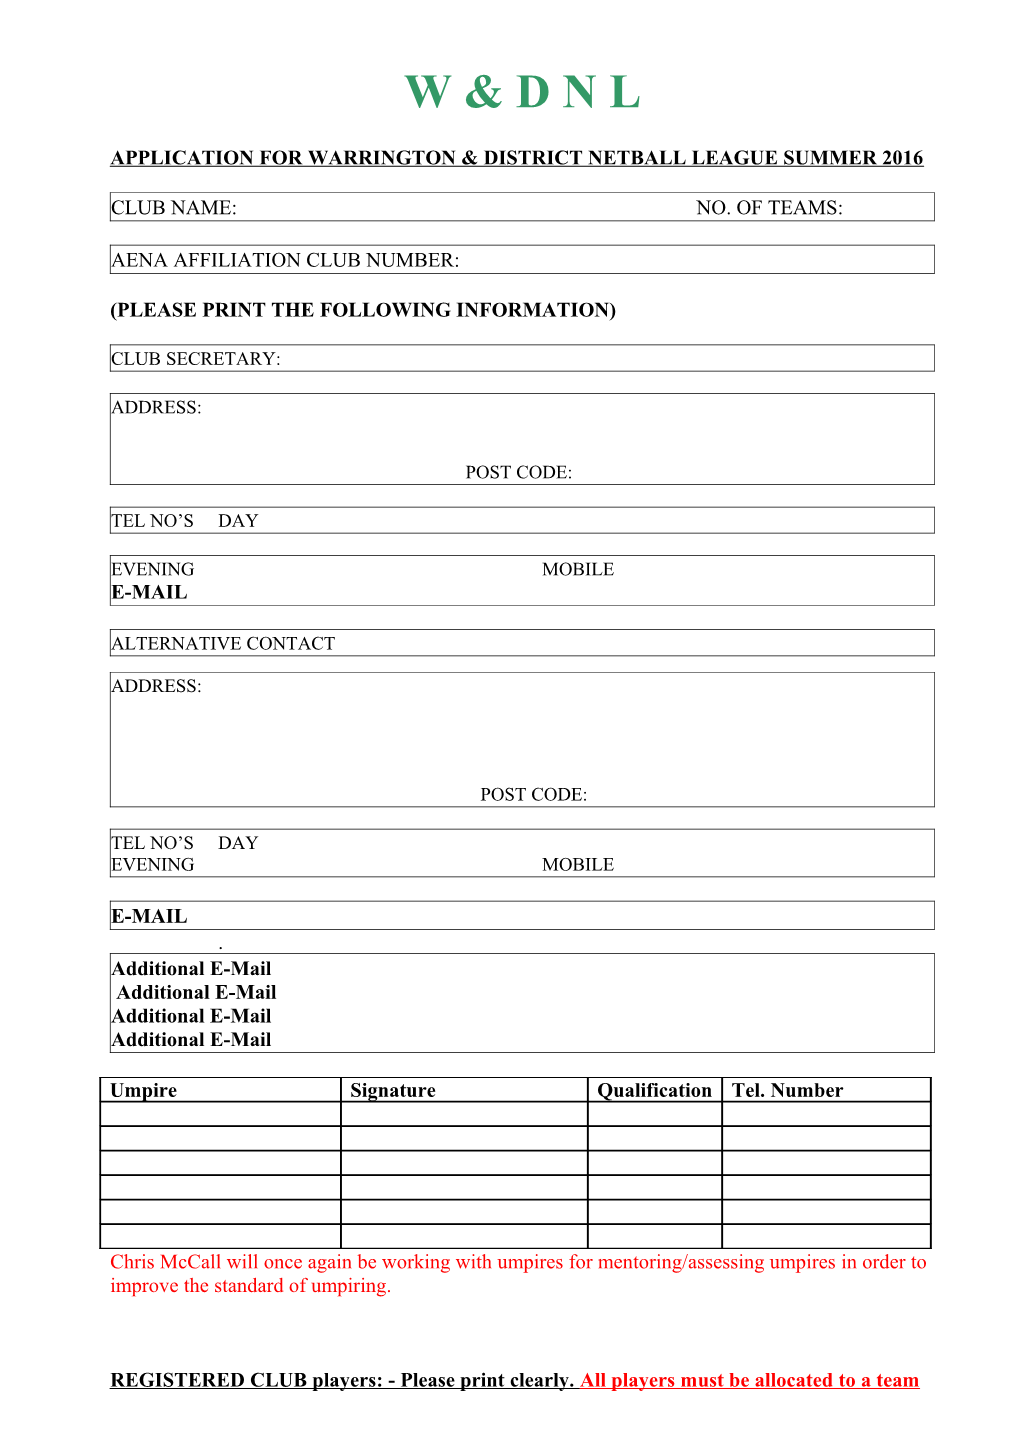 Application for Warrington & District Netball League Summer 2016